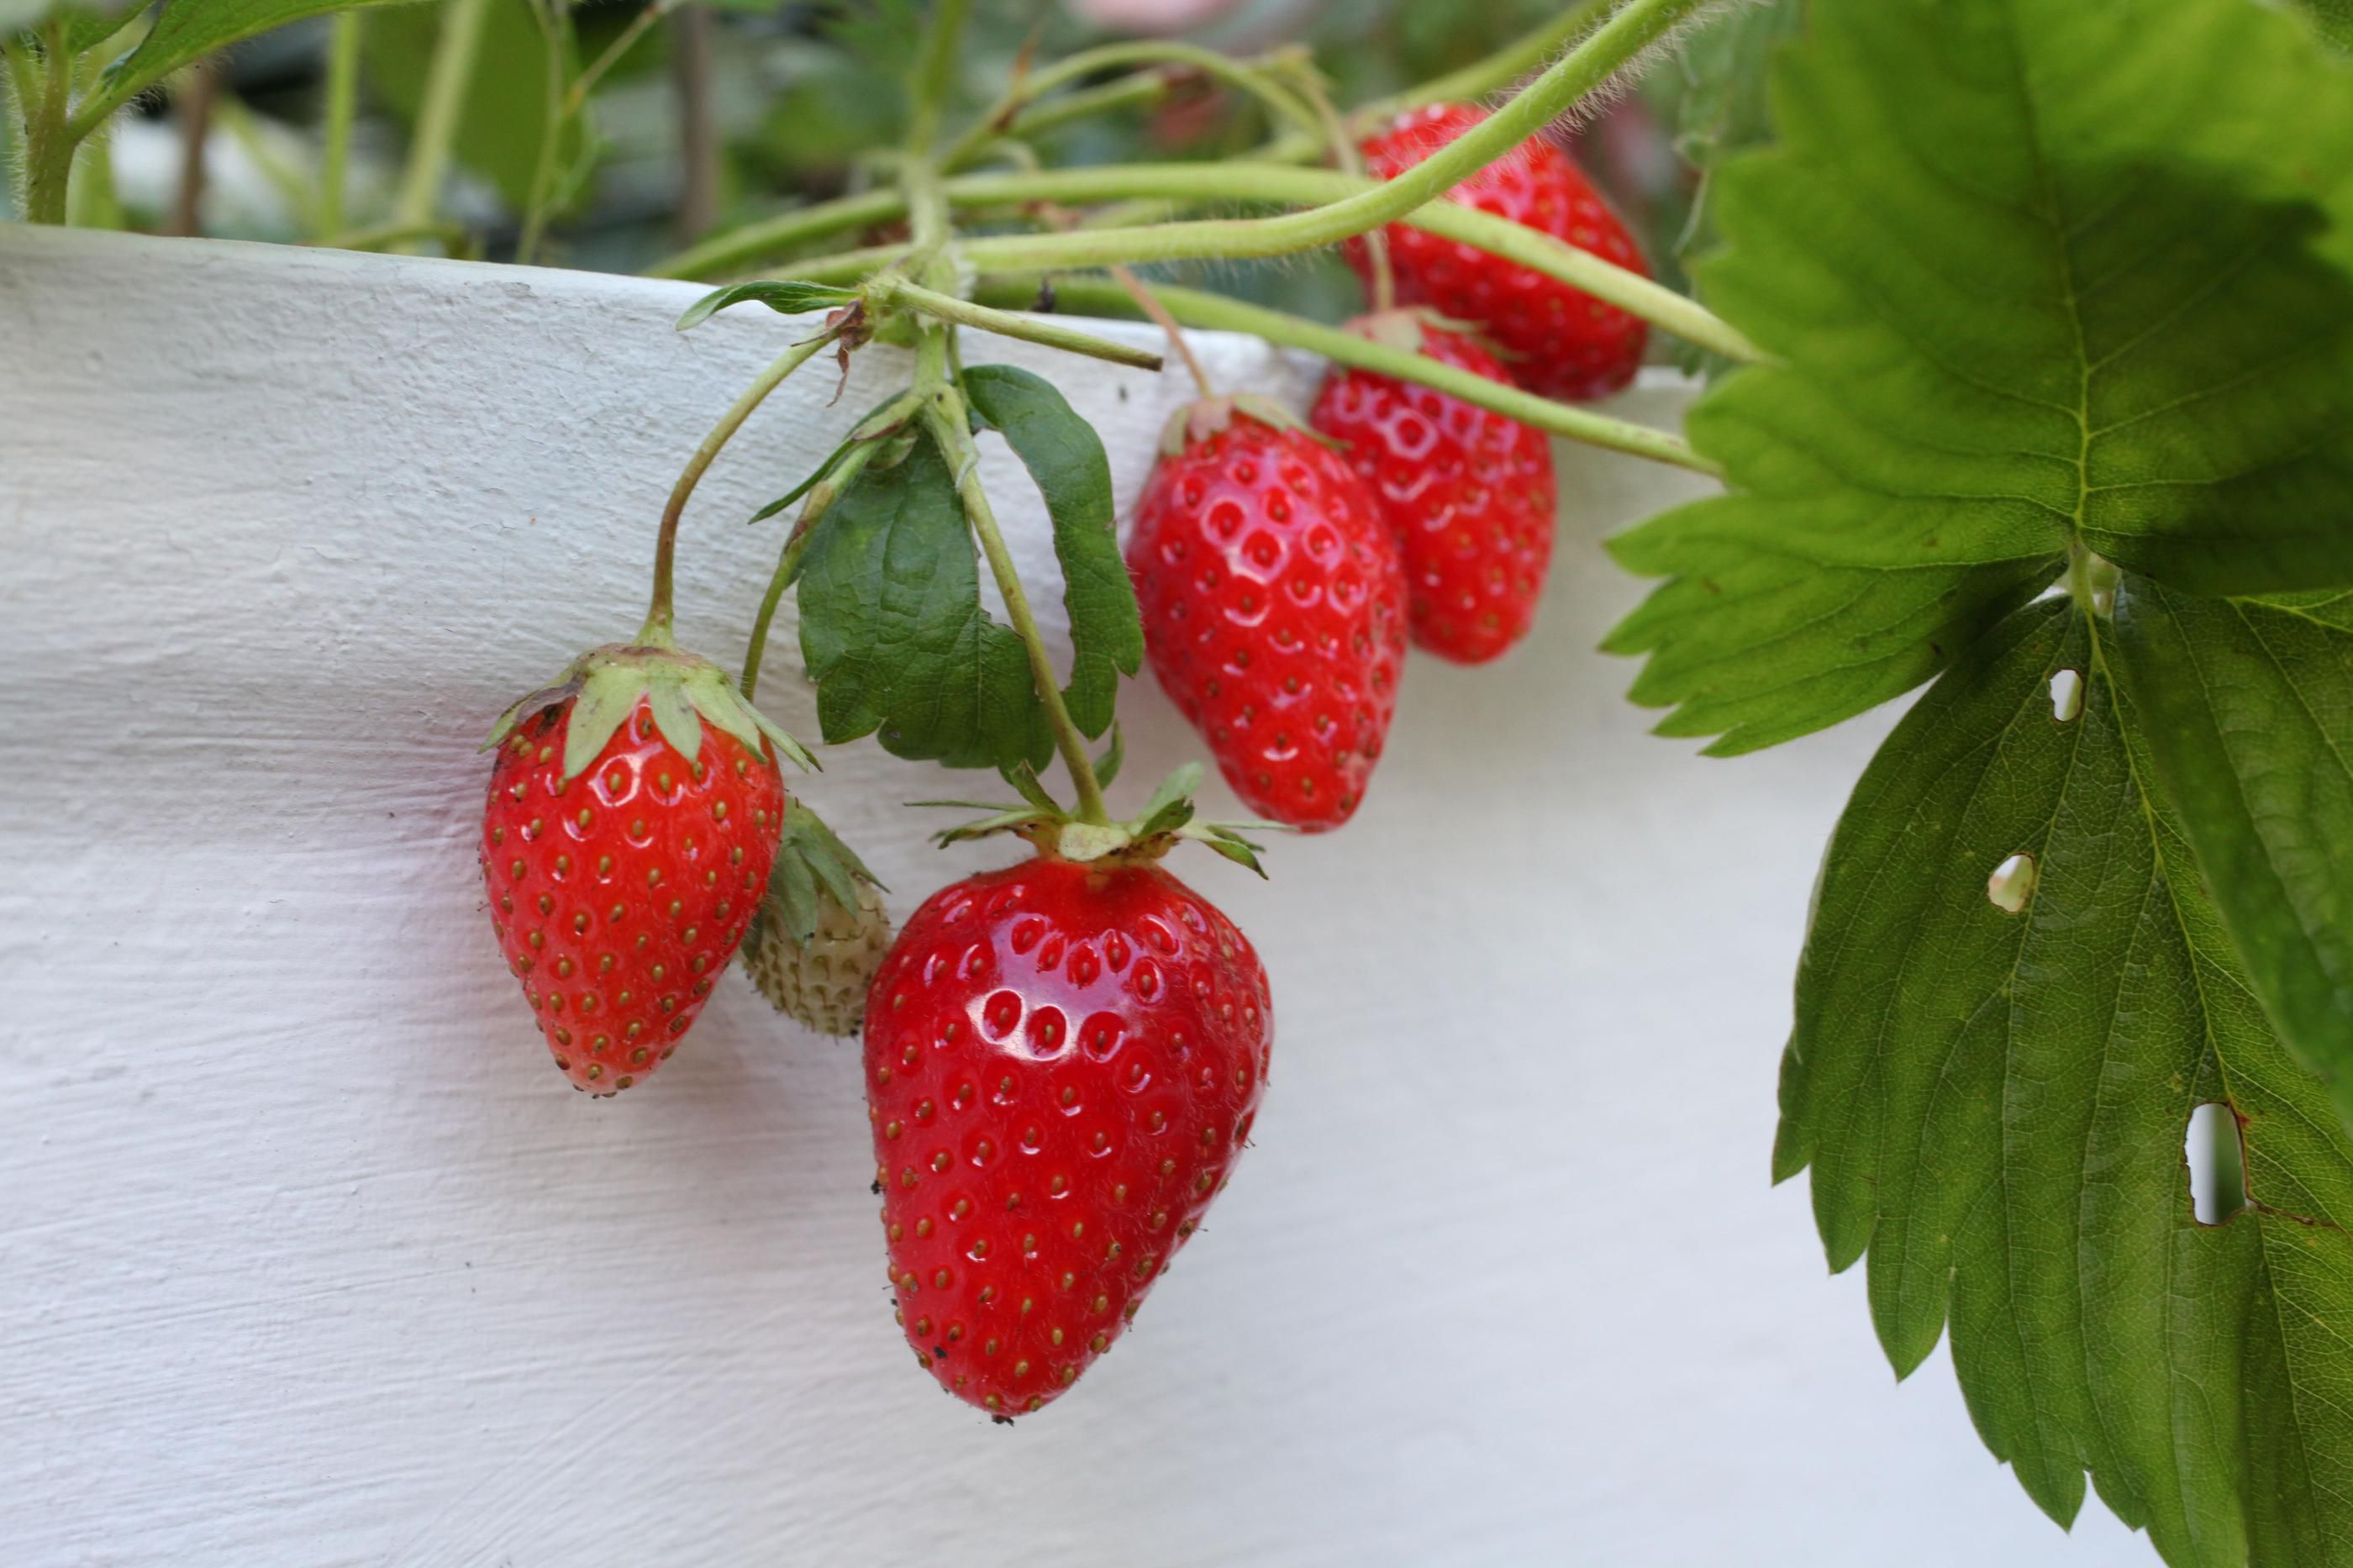 Riches en vitamines, pauvres en calories, les fraises regorgent d'atouts nutritionnels. LP/Olivier Boitet